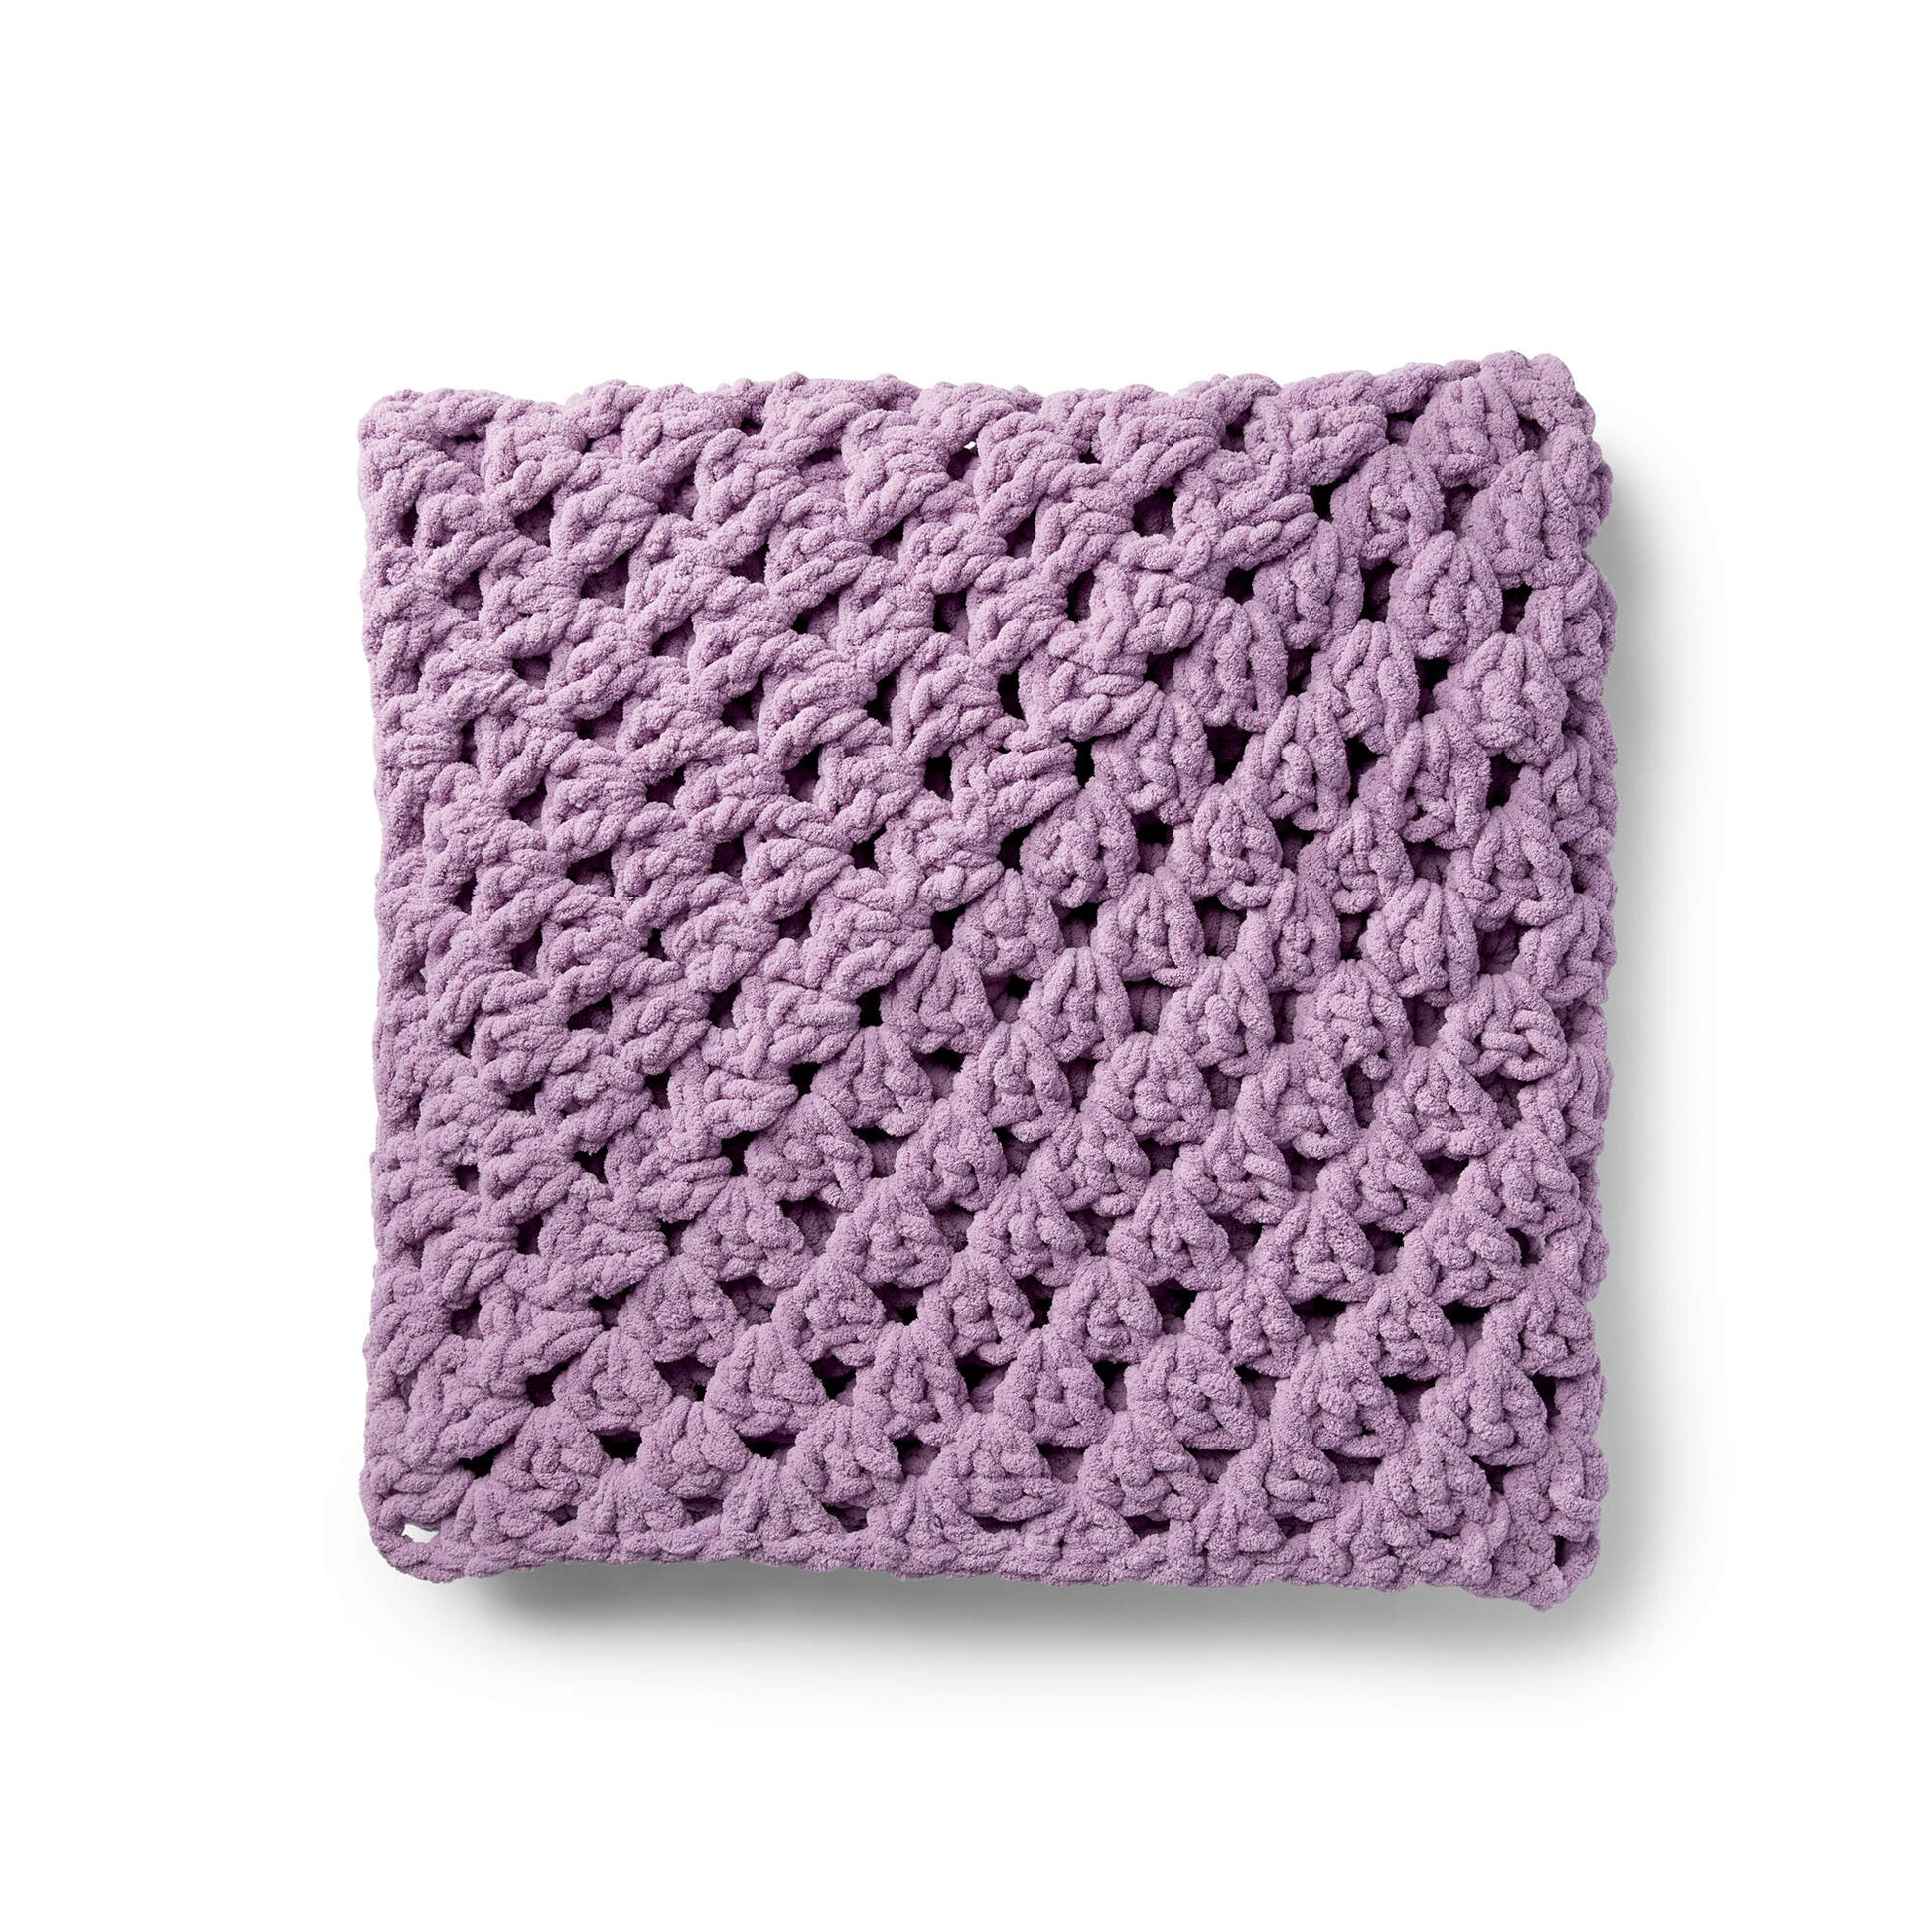 Bernat Granny Rectangle Crochet Afghan Crochet Blanket made in Bernat Blanket Extra yarn